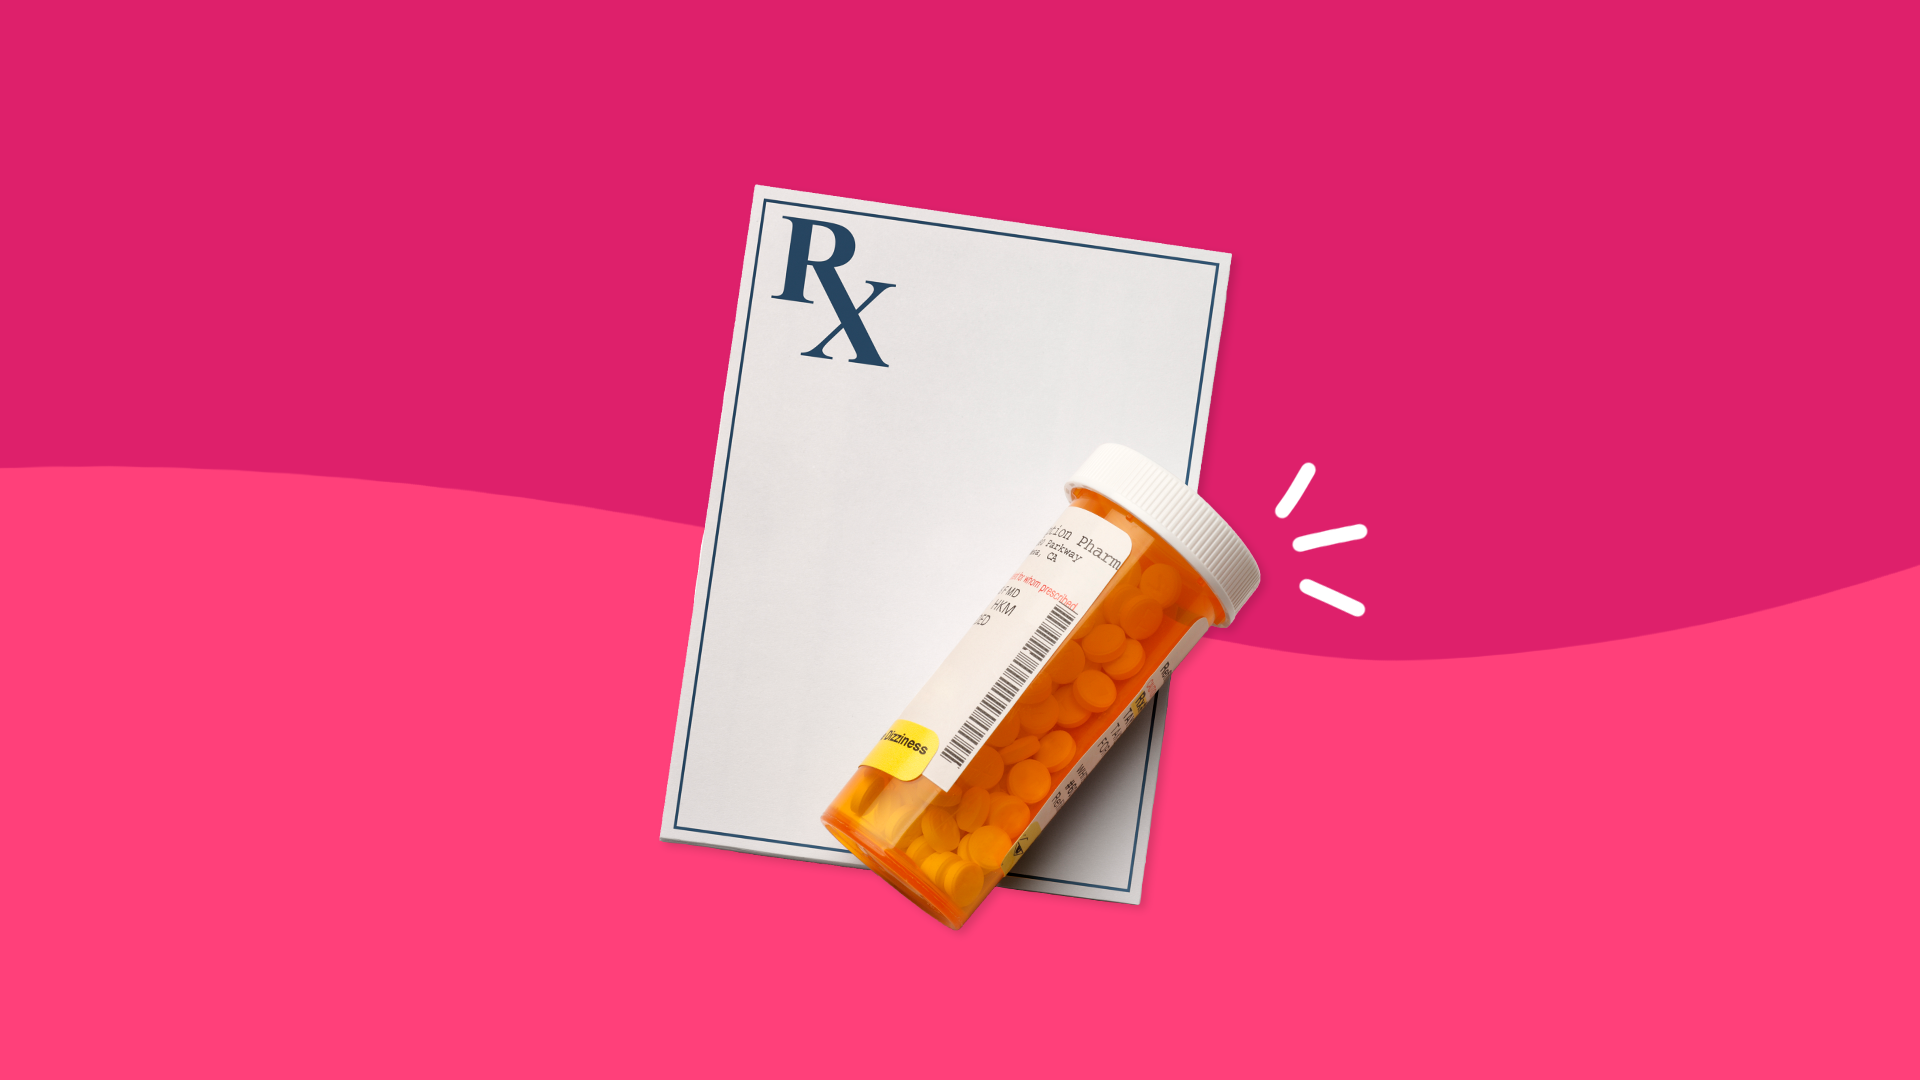 Prescription pad with pill bottle: Compare Myrbetriq alternatives